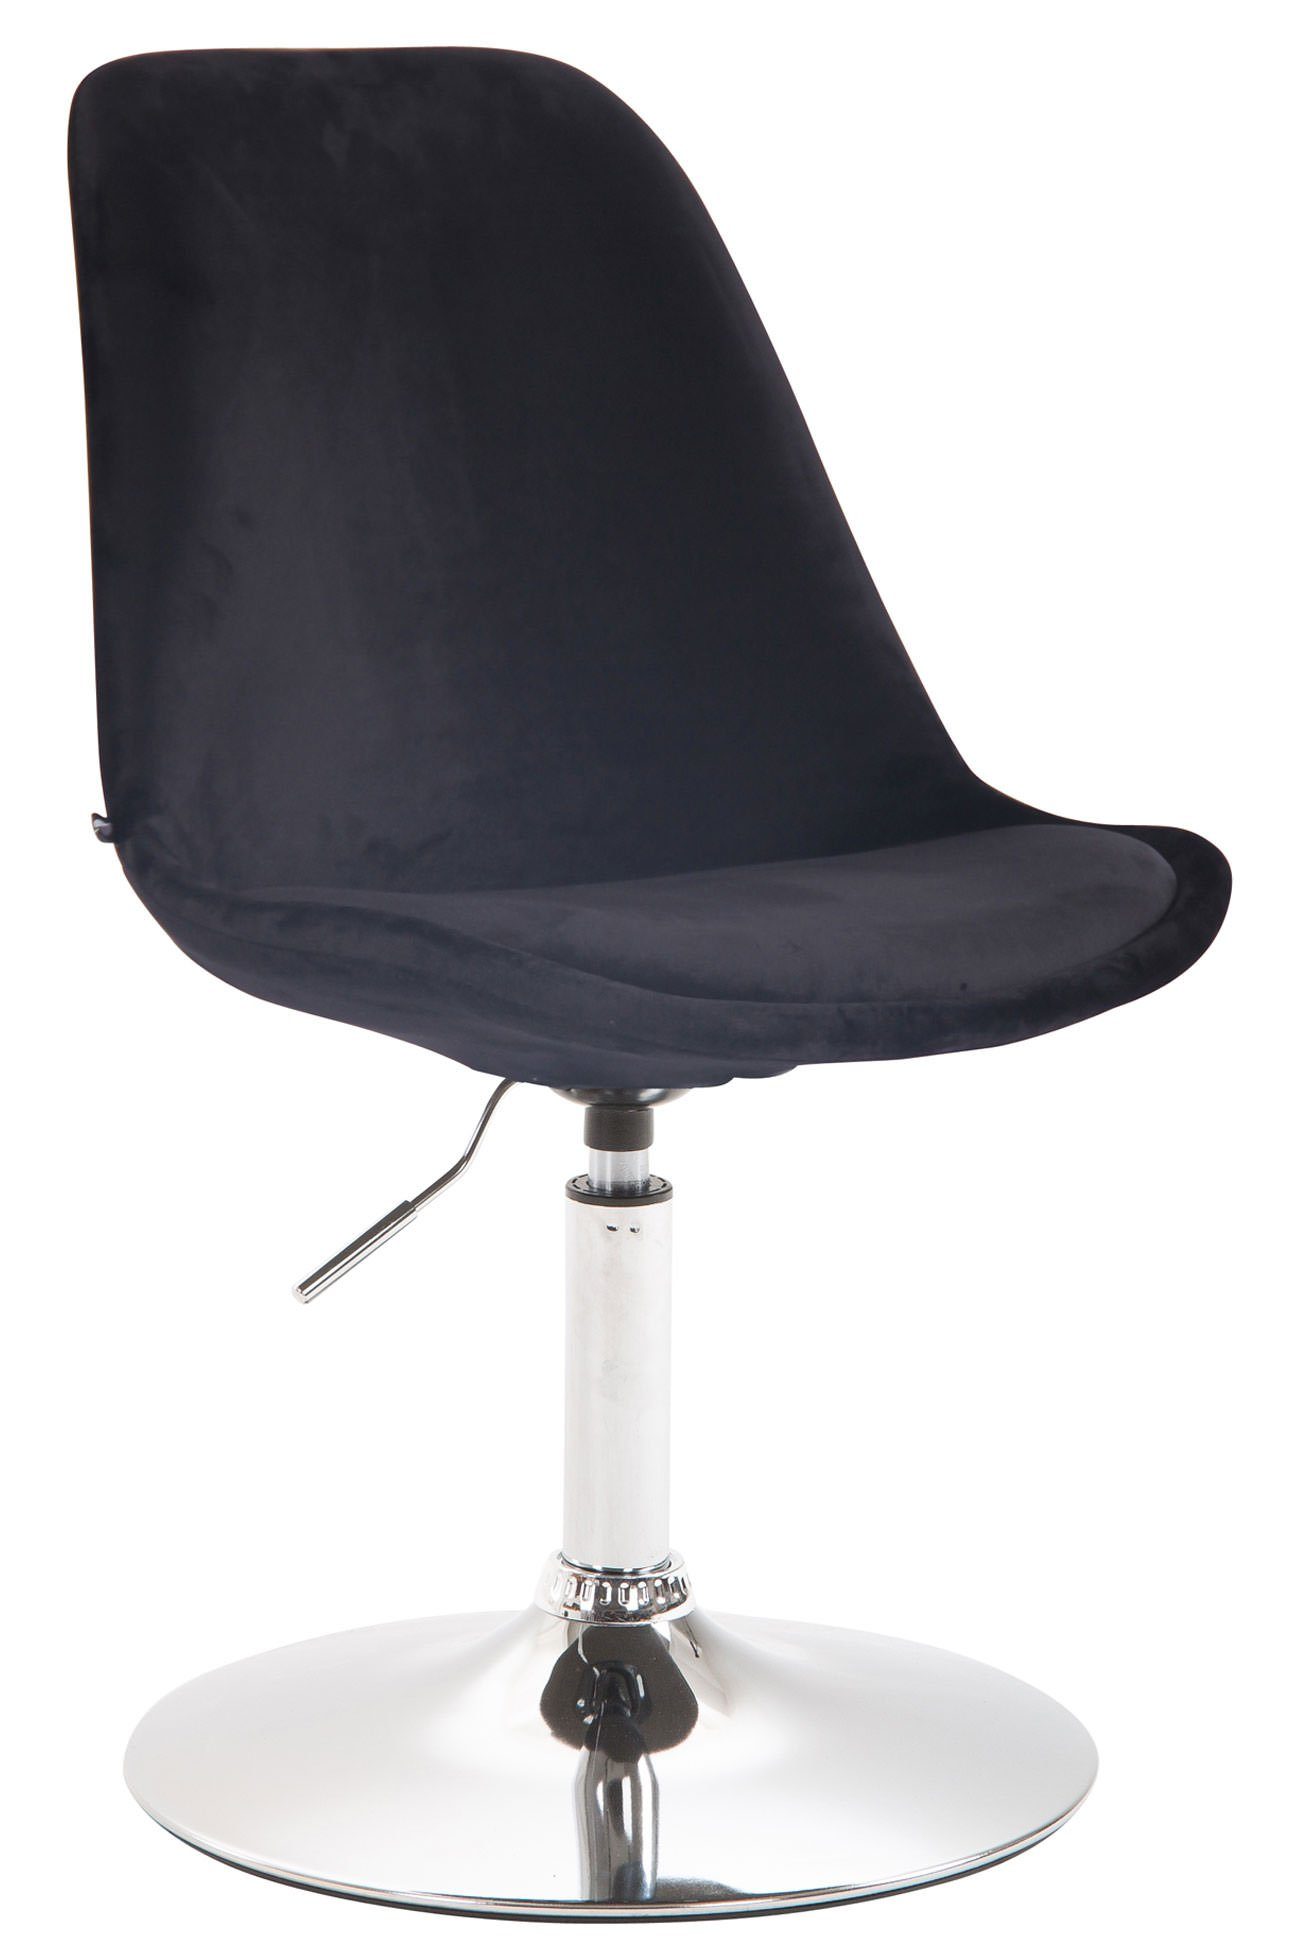 TPFLiving Esszimmerstuhl Mavic mit hochwertig gepolsterter Sitzfläche - Konferenzstuhl (Küchenstuhl - Esstischstuhl - Wohnzimmerstuhl - Polsterstuhl), Gestell: Metall chrom - Sitzfläche: Samt schwarz